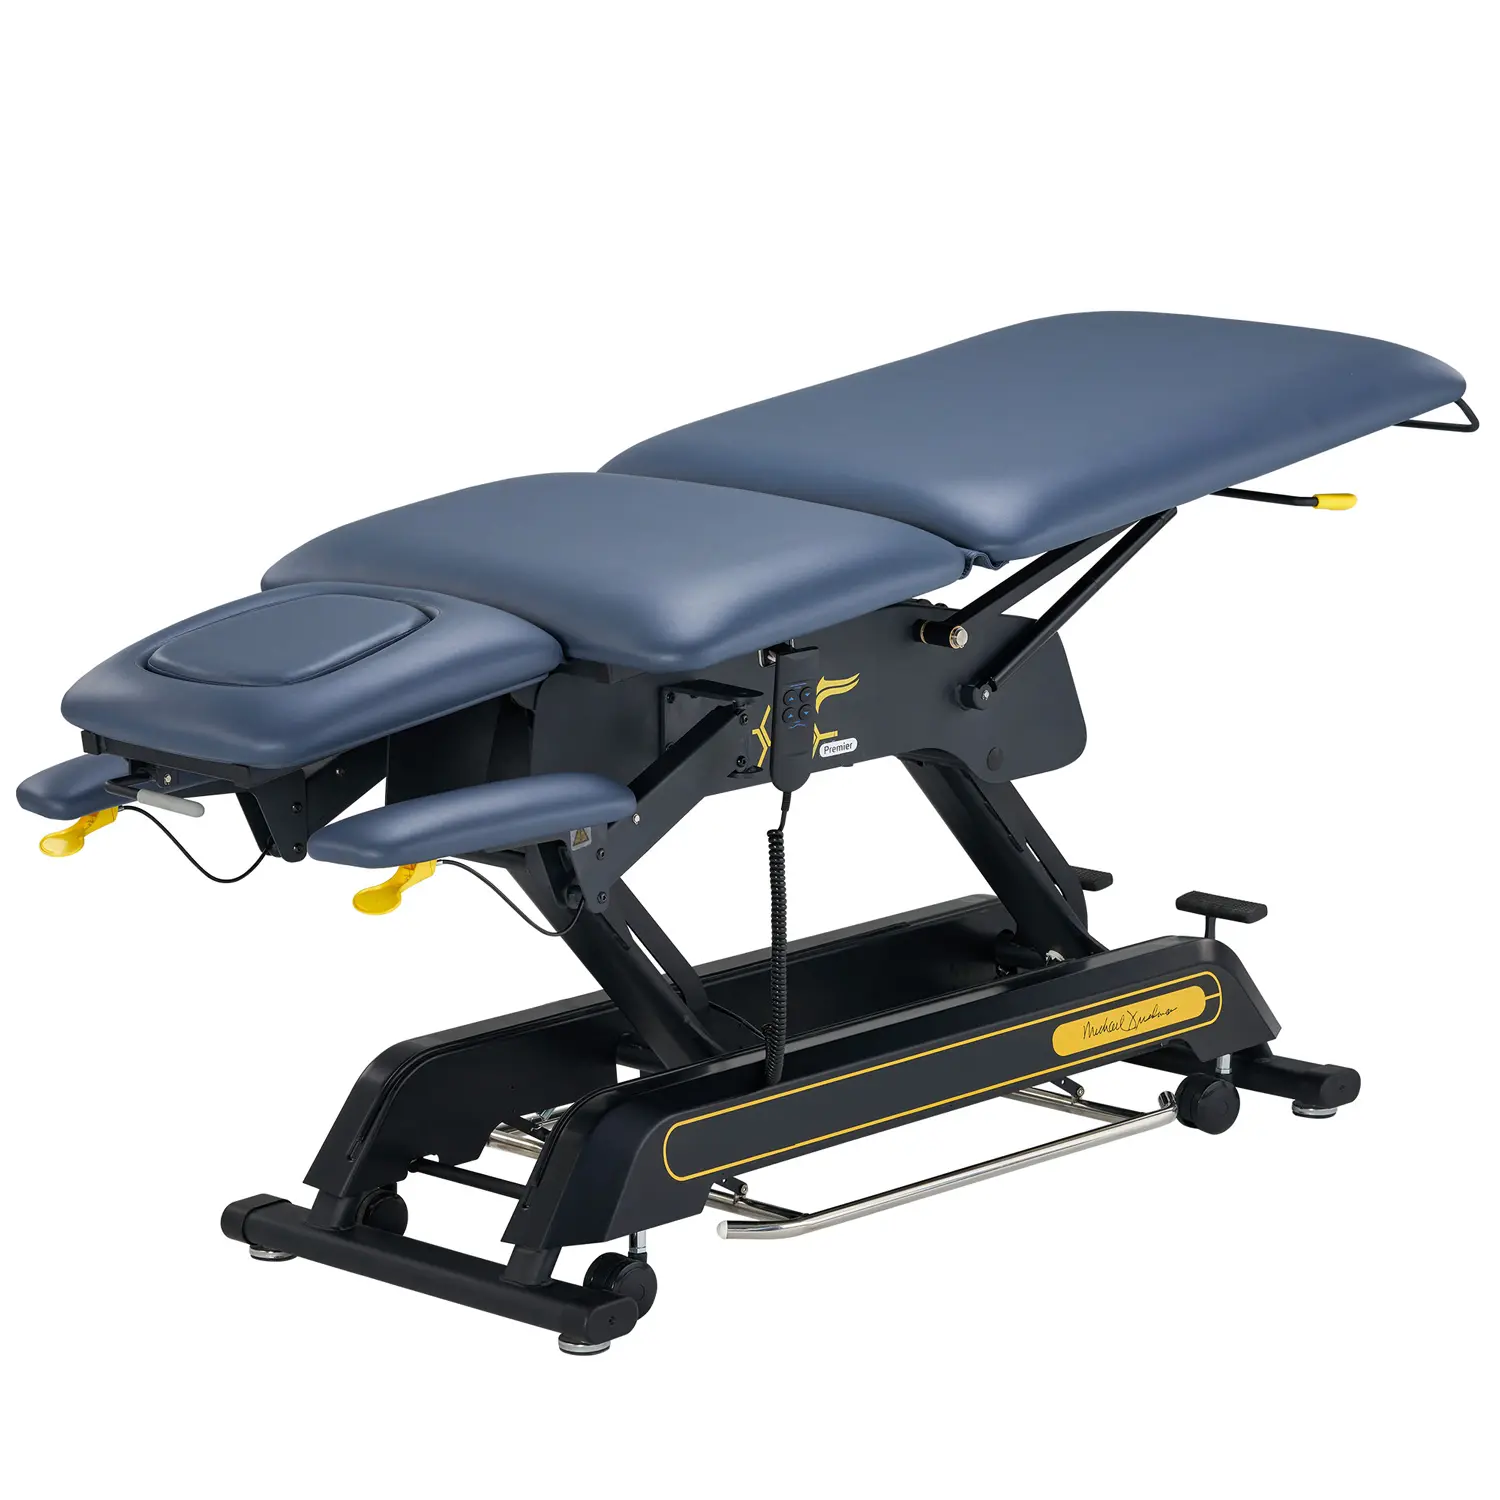 Hemet Premier-Infinity Fabriek Goedkope Professionele Elektrische Fysiotherapie Behandeling Tafel Behandeling Onderzoek Bed Massage Tafel